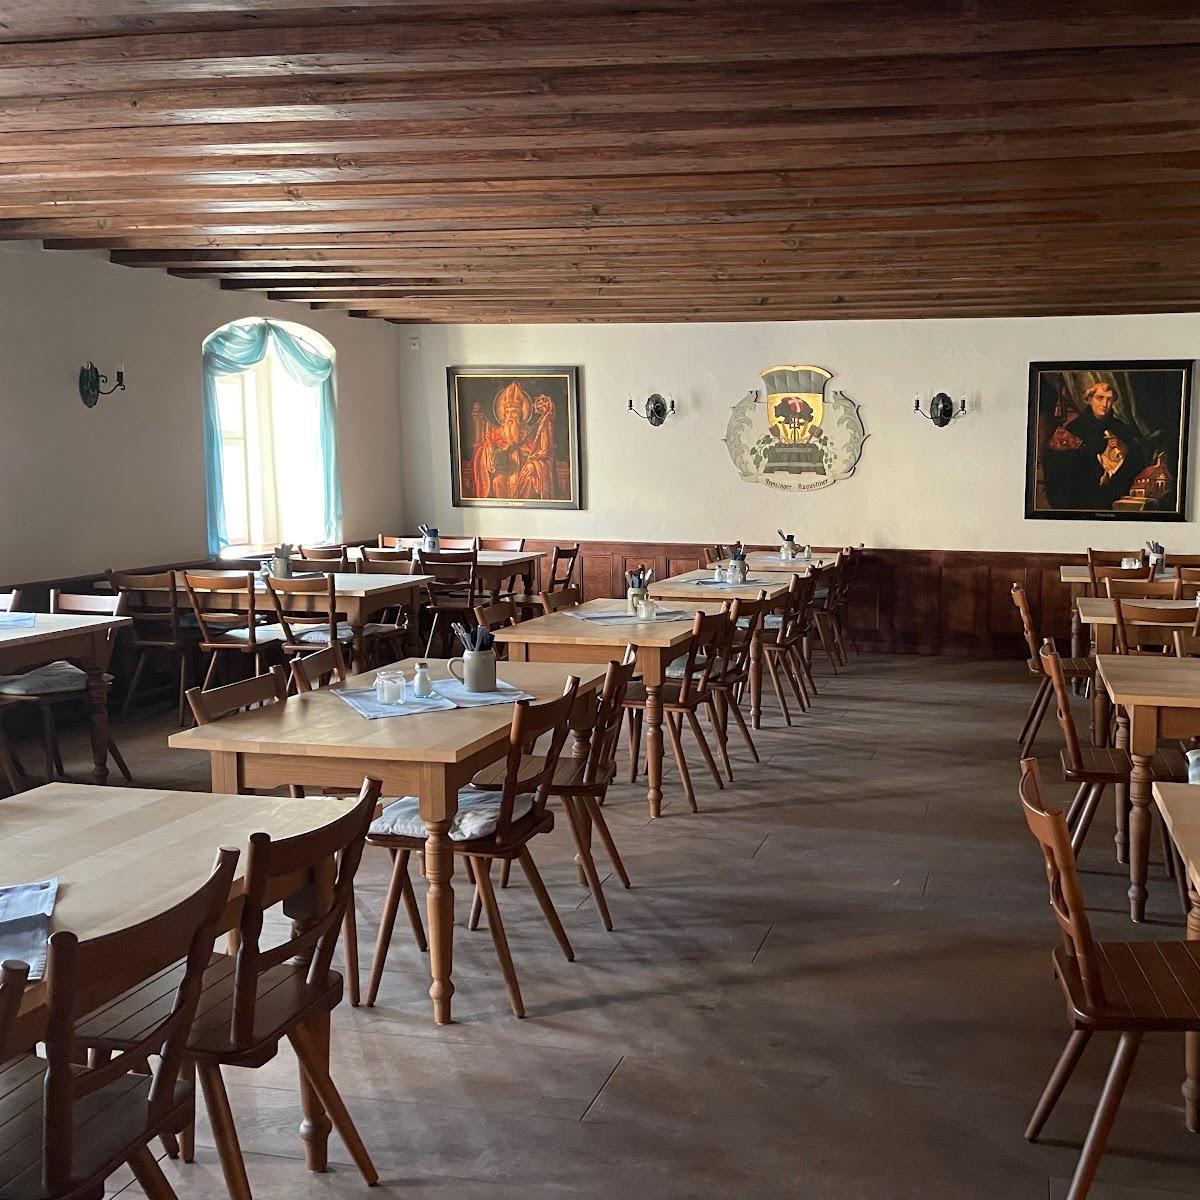 Restaurant "er Augustiner" in Freising